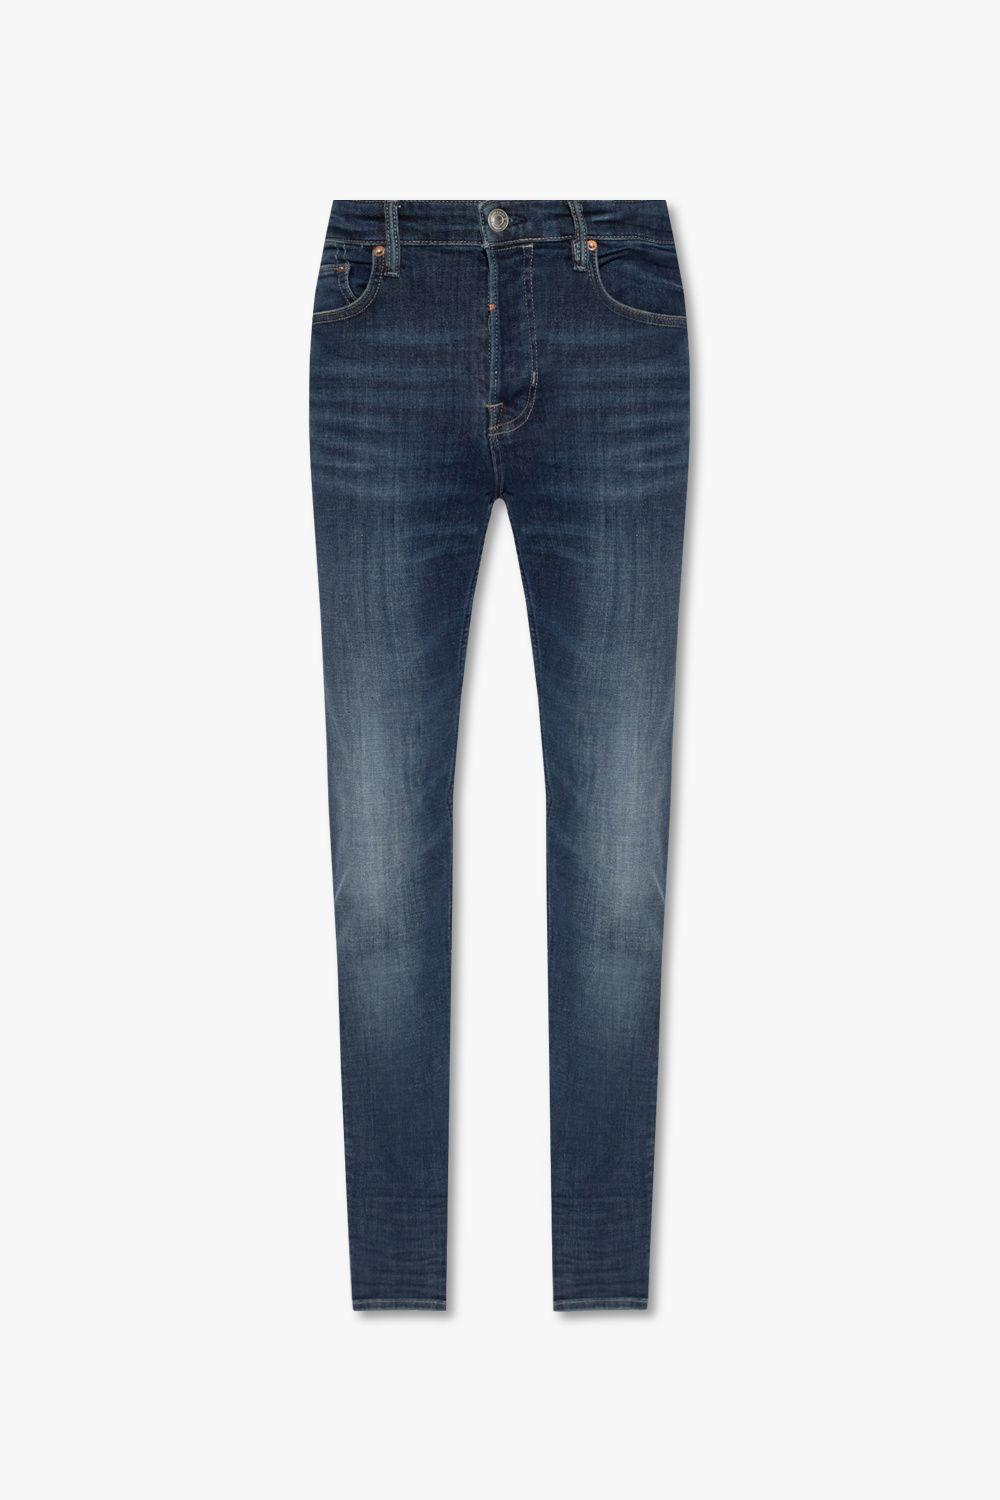 AllSaints 'cigarette' Skinny Jeans in Blue | Lyst